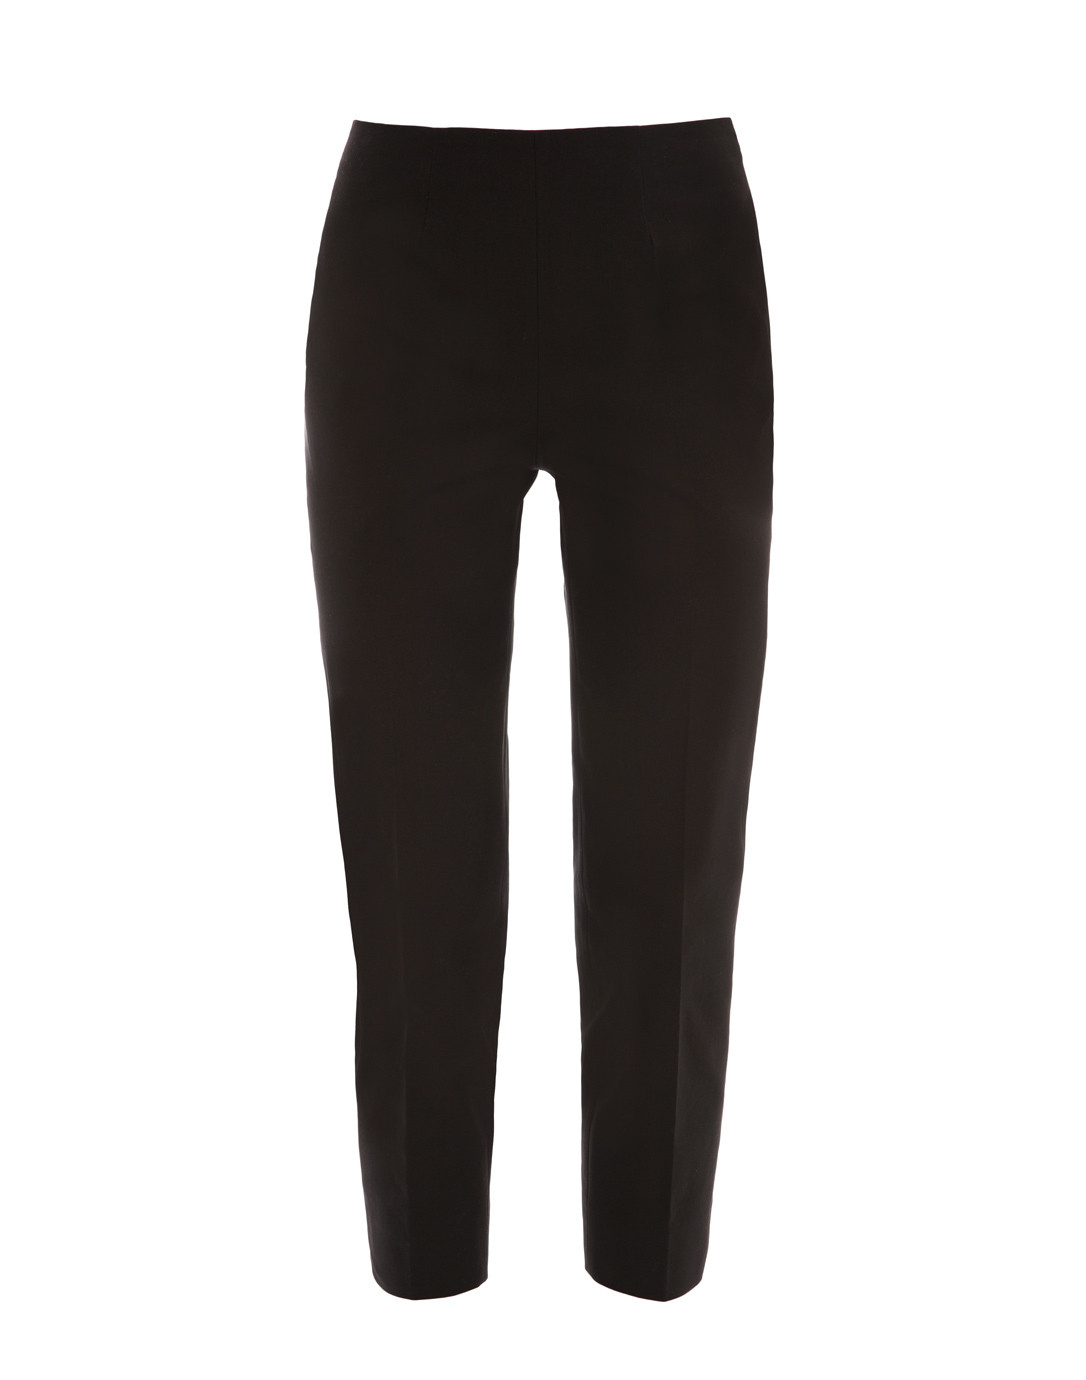 Topshop zip front capri trouser in black